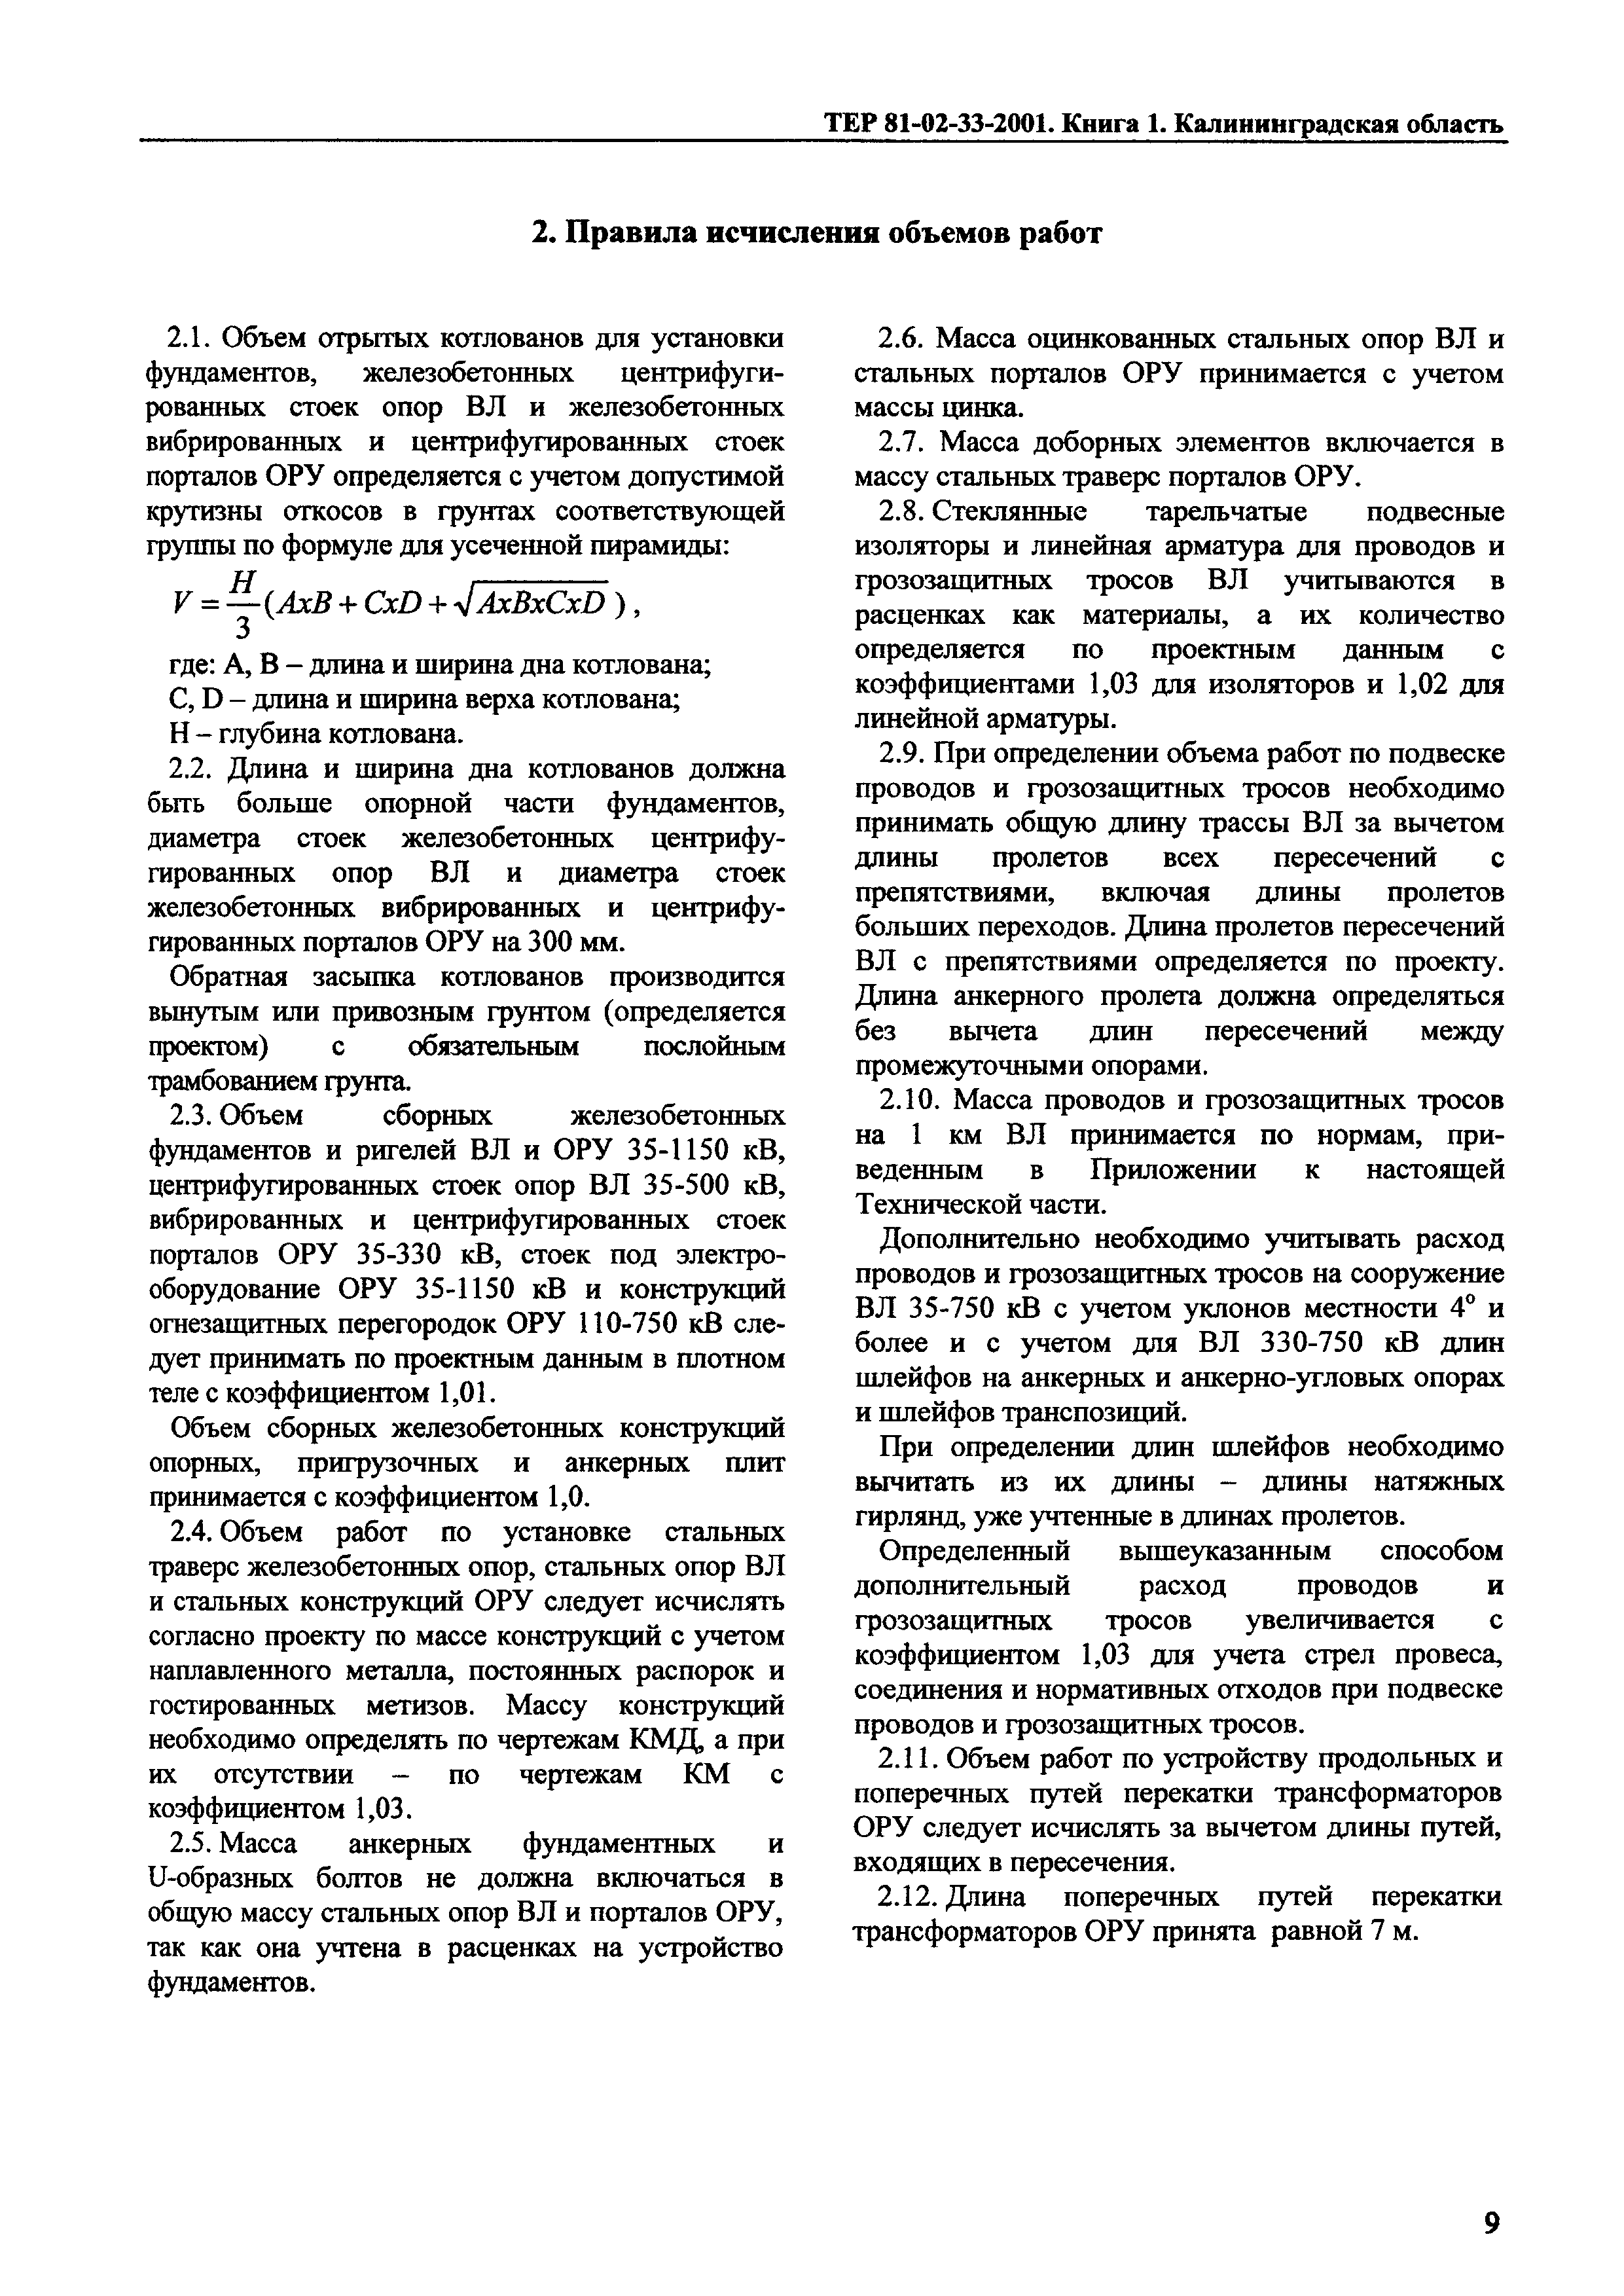 ТЕР Калининградская область 2001-33